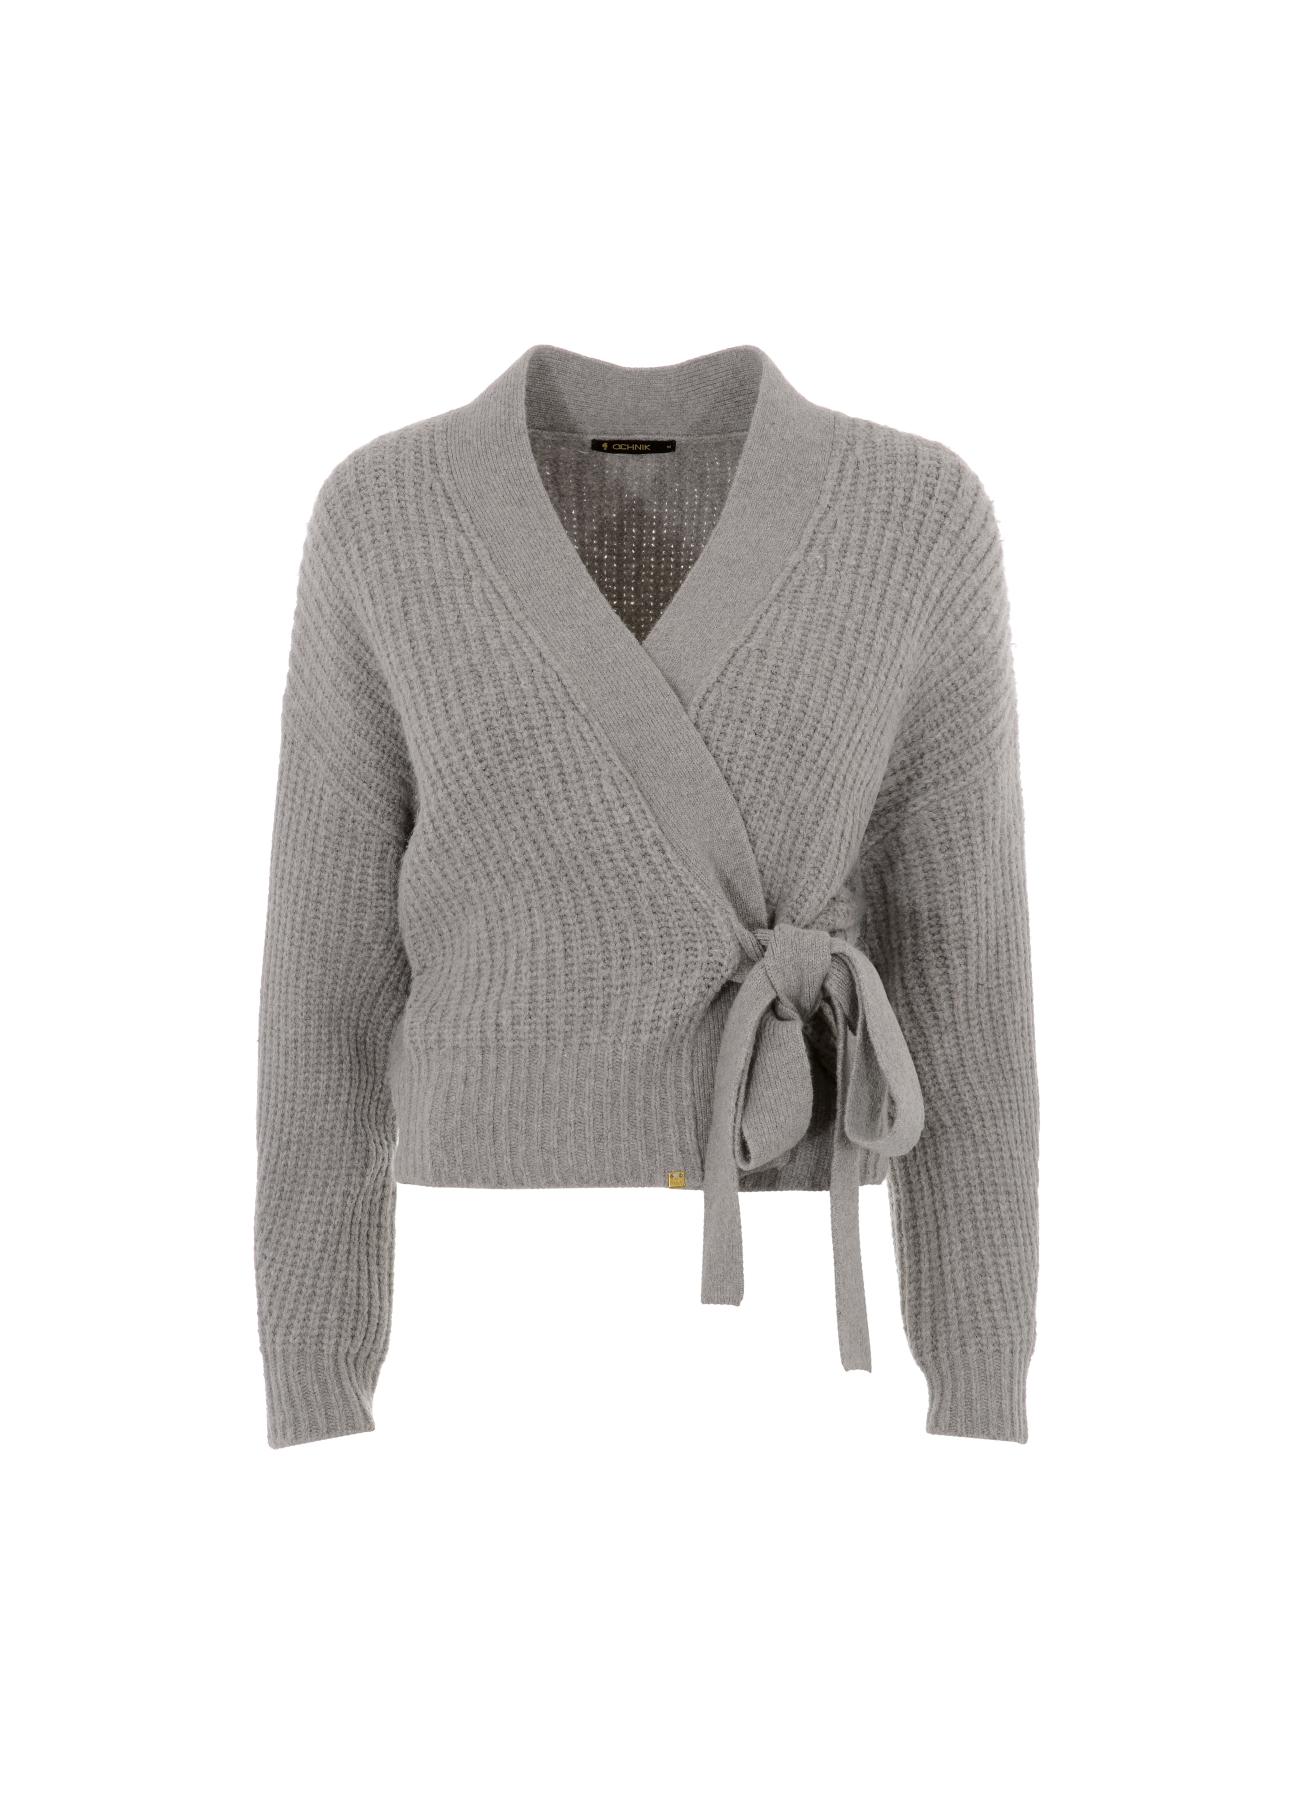 Szary wiązany sweter damski SWEDT-0147-91(Z21)